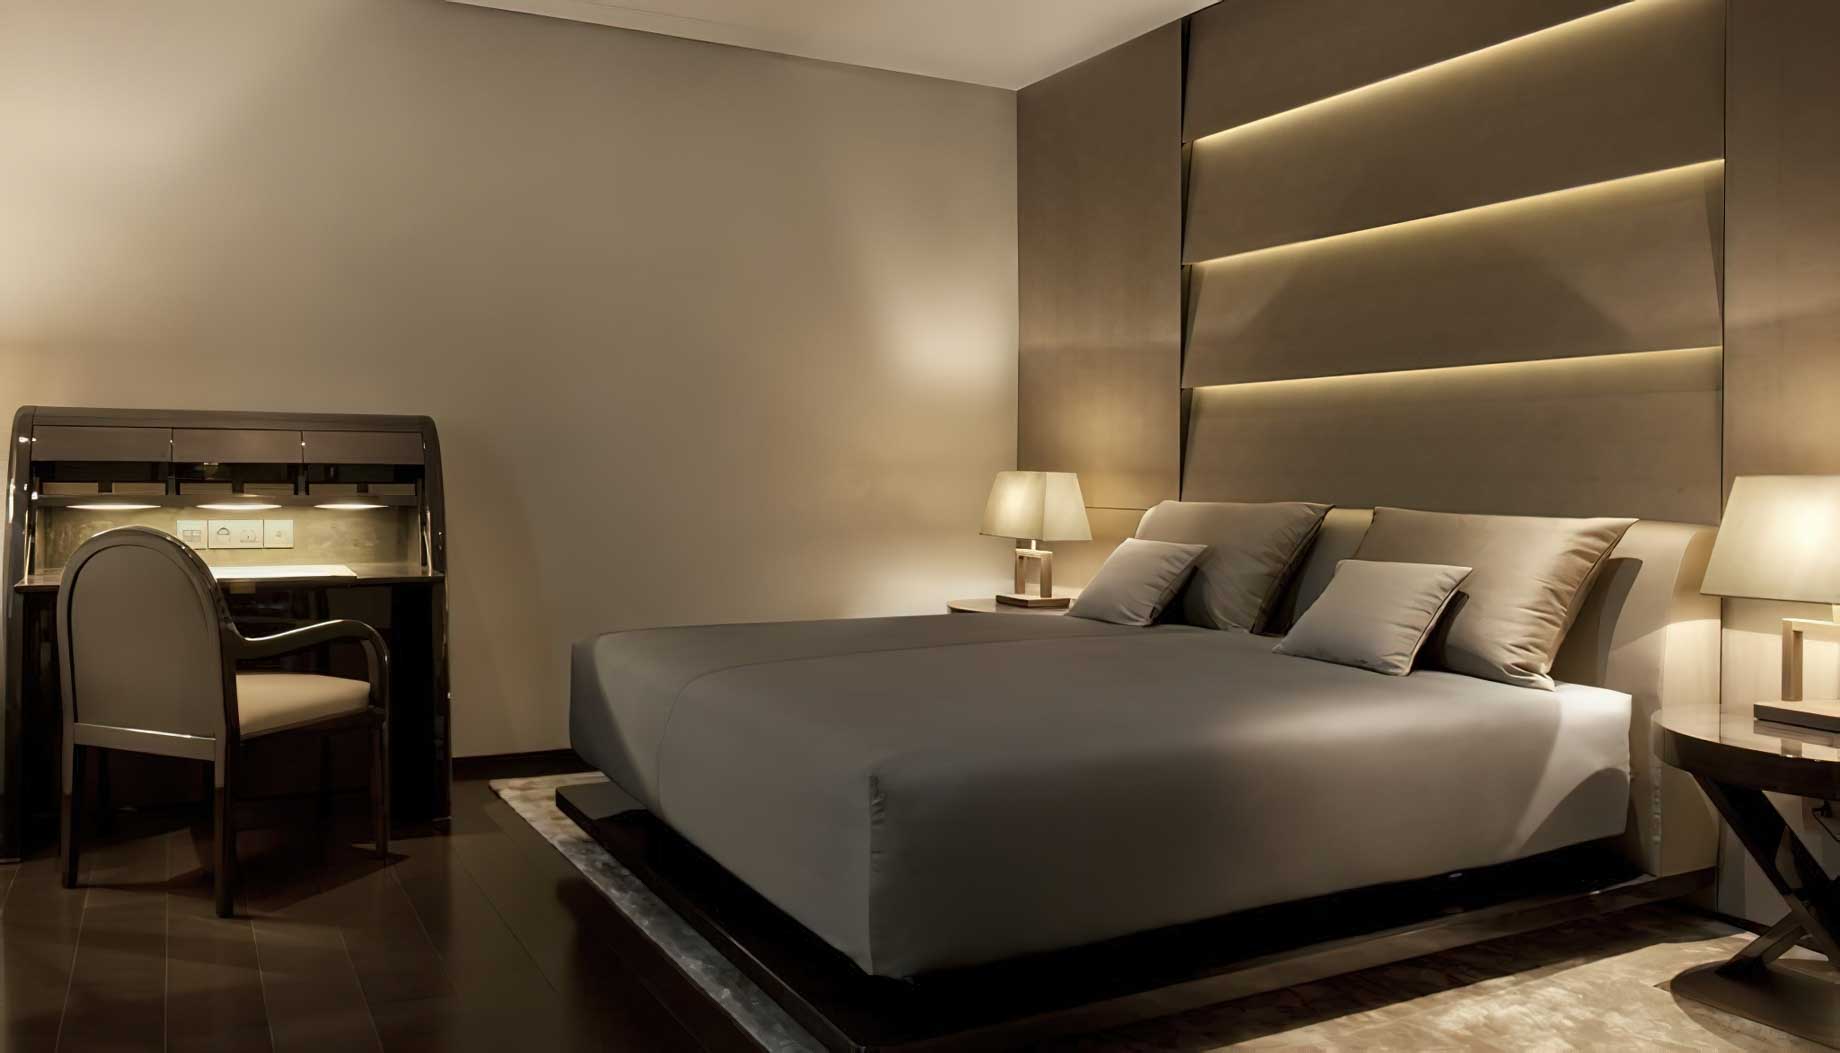 044 – Armani Hotel Milano – Milan, Italy – Armani Suite Bedroom